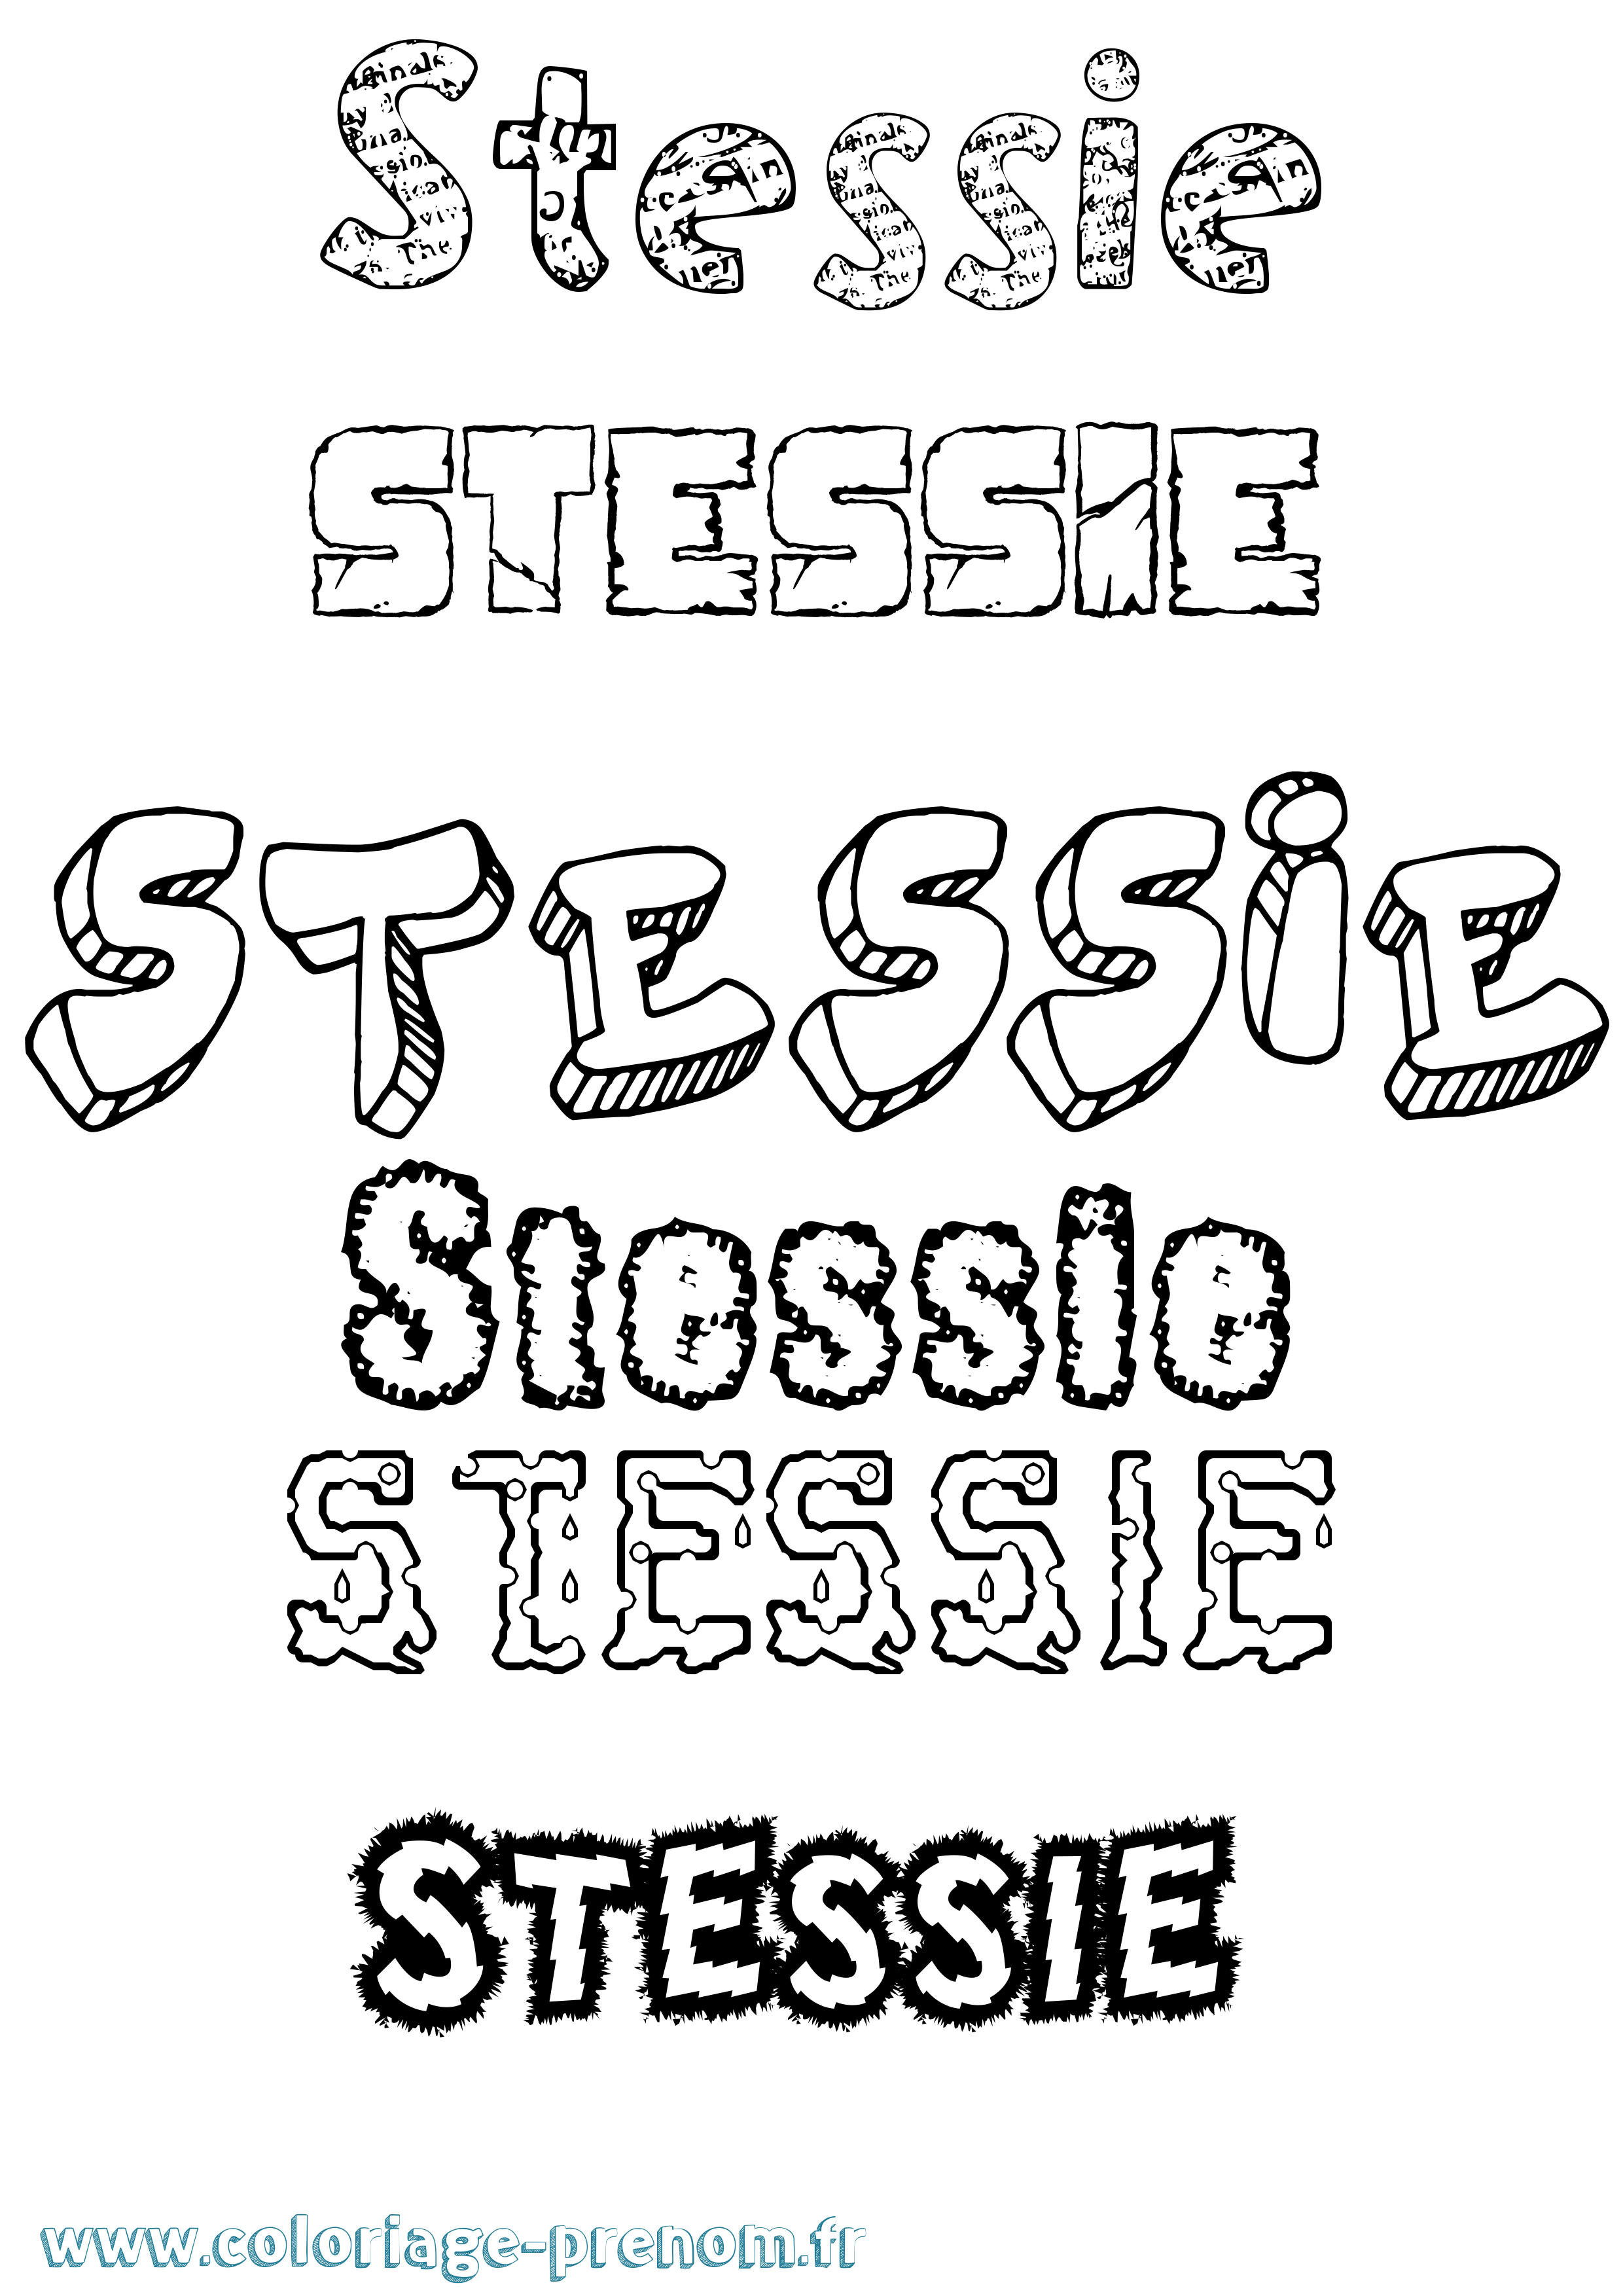 Coloriage prénom Stessie Destructuré